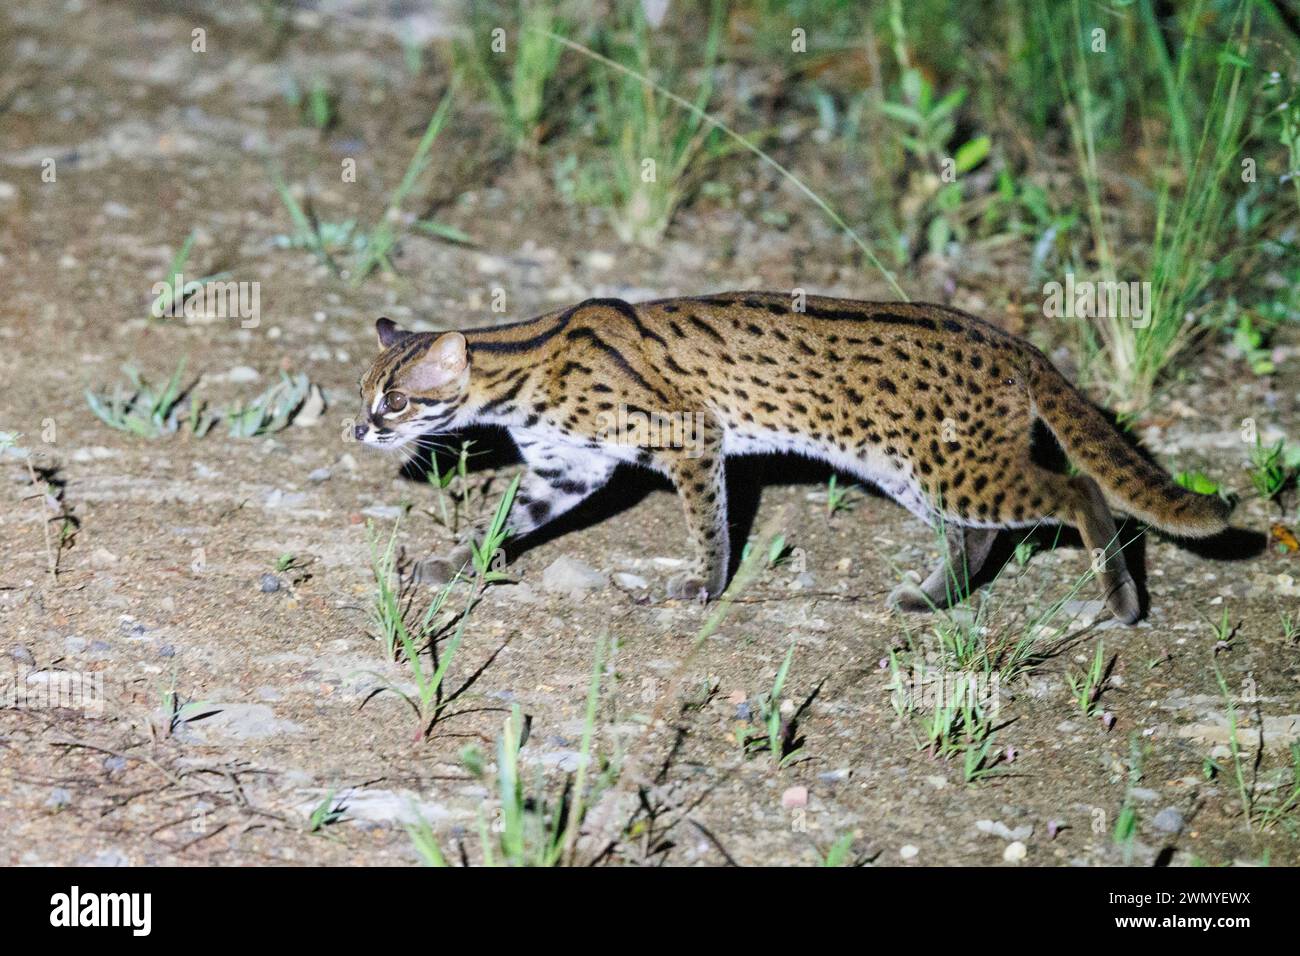 Malaisie, Bornéo, Sabah, réserve naturelle de Tabin, chat léopard (Prionailurus bengalensis) , chasse dans l'herbe la nuit Banque D'Images